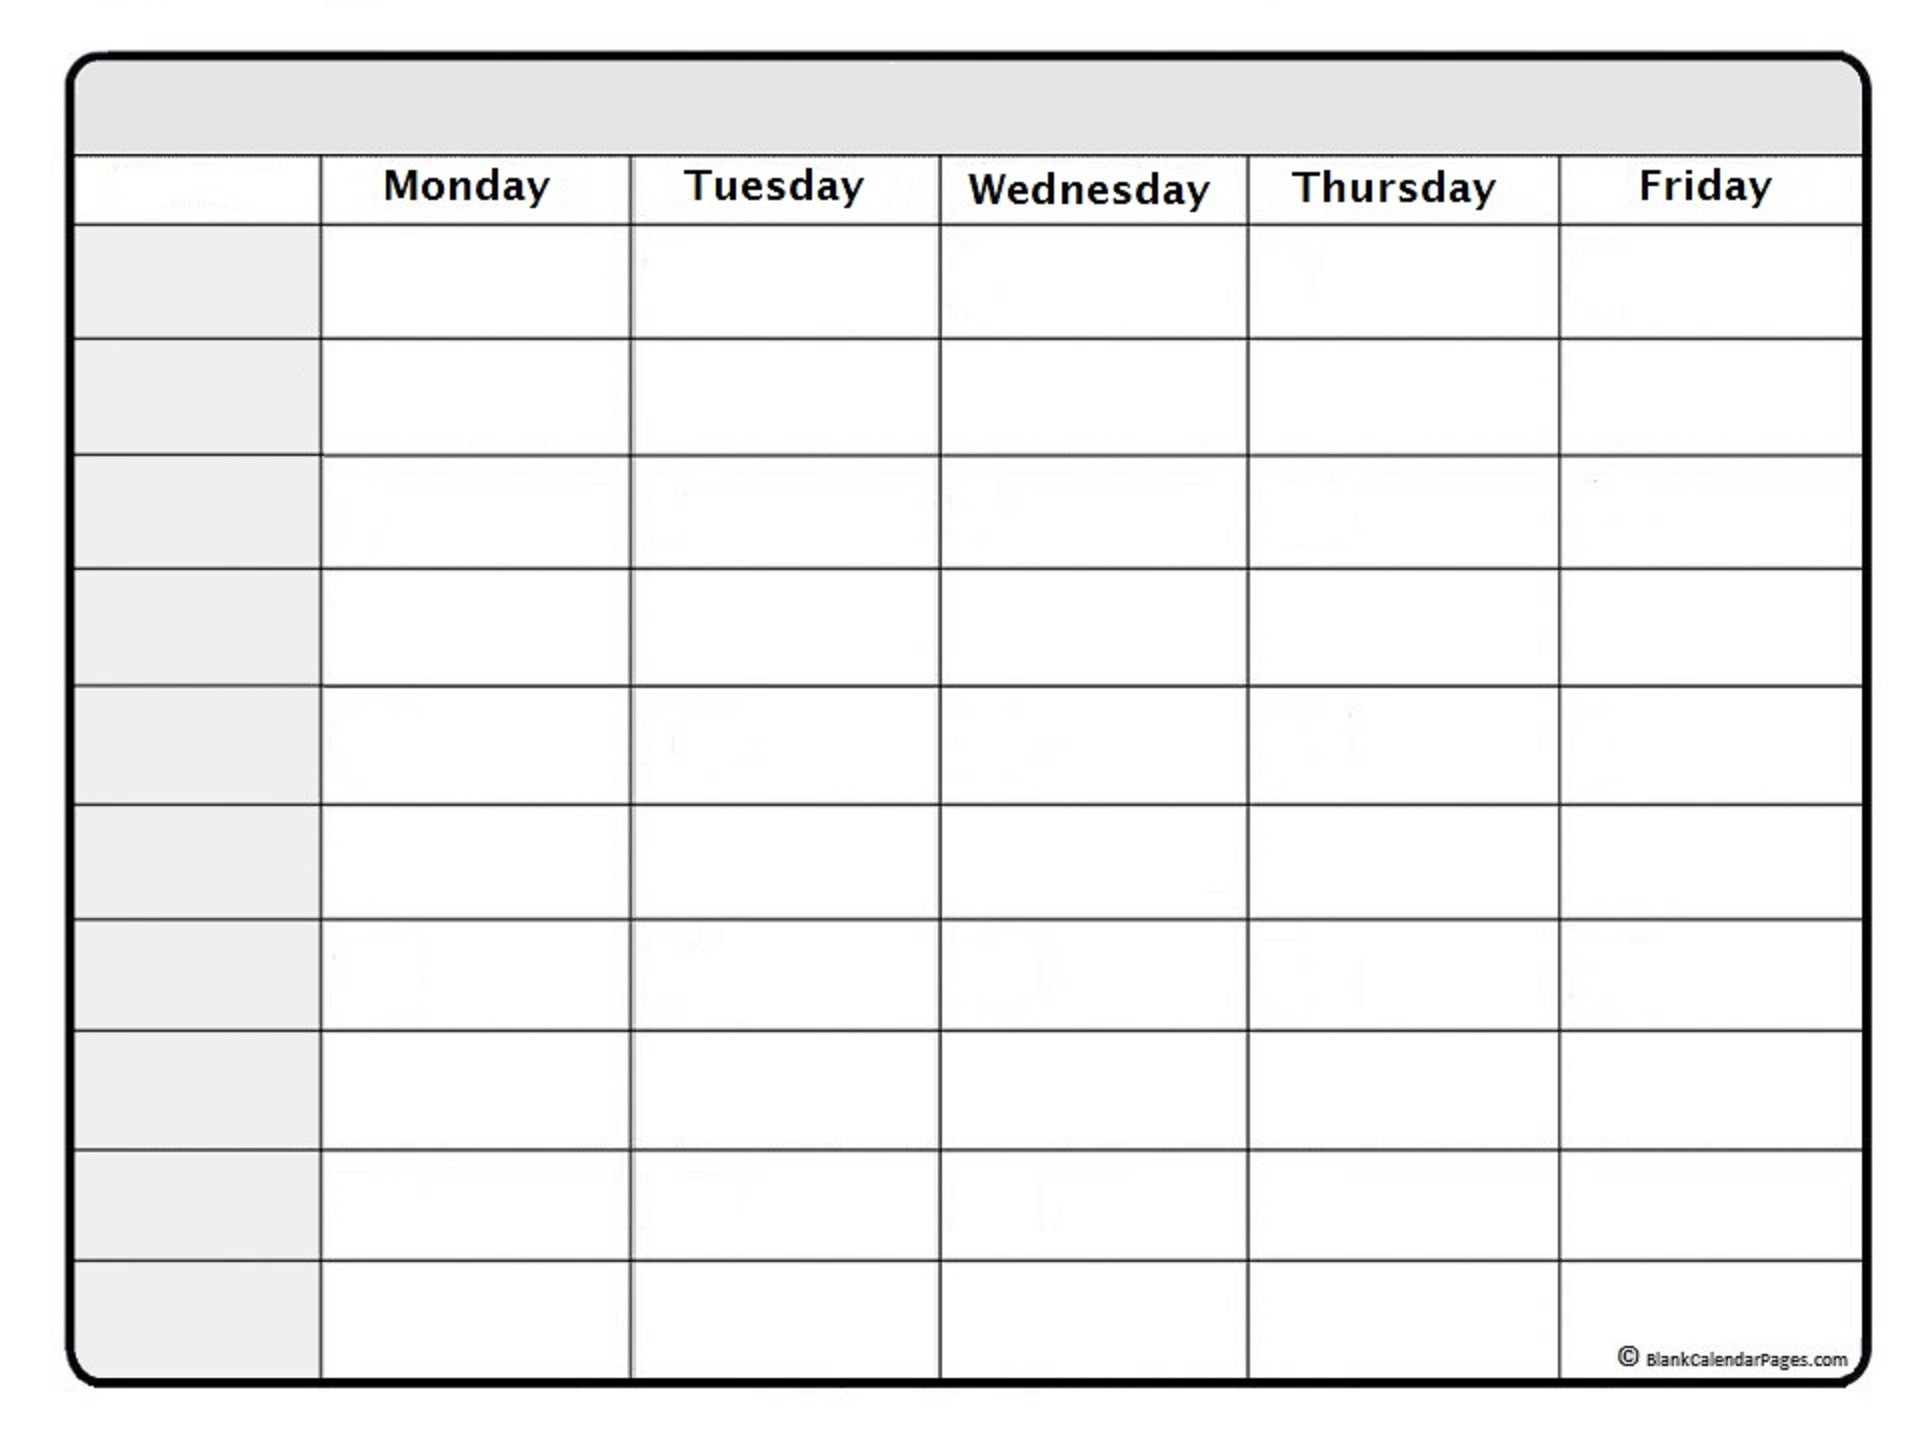 September 2021 Weekly Calendar | September 2021 Weekly-Hourly Printable Schedule Calendars 2021